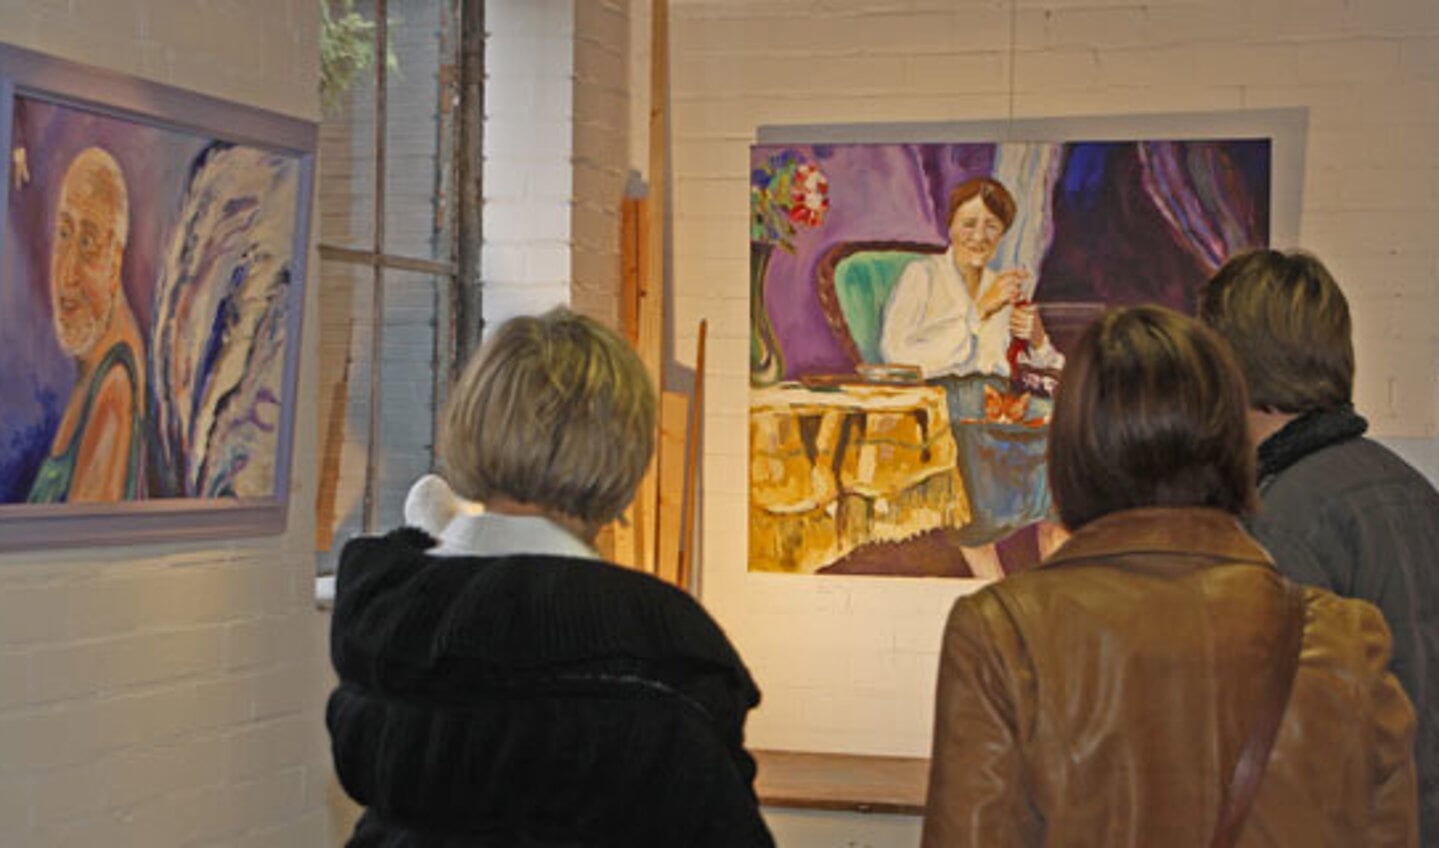 Kunst kijken in Princenhage tijdens de jaarlijkse kunstroute. foto Jorgen Janssens